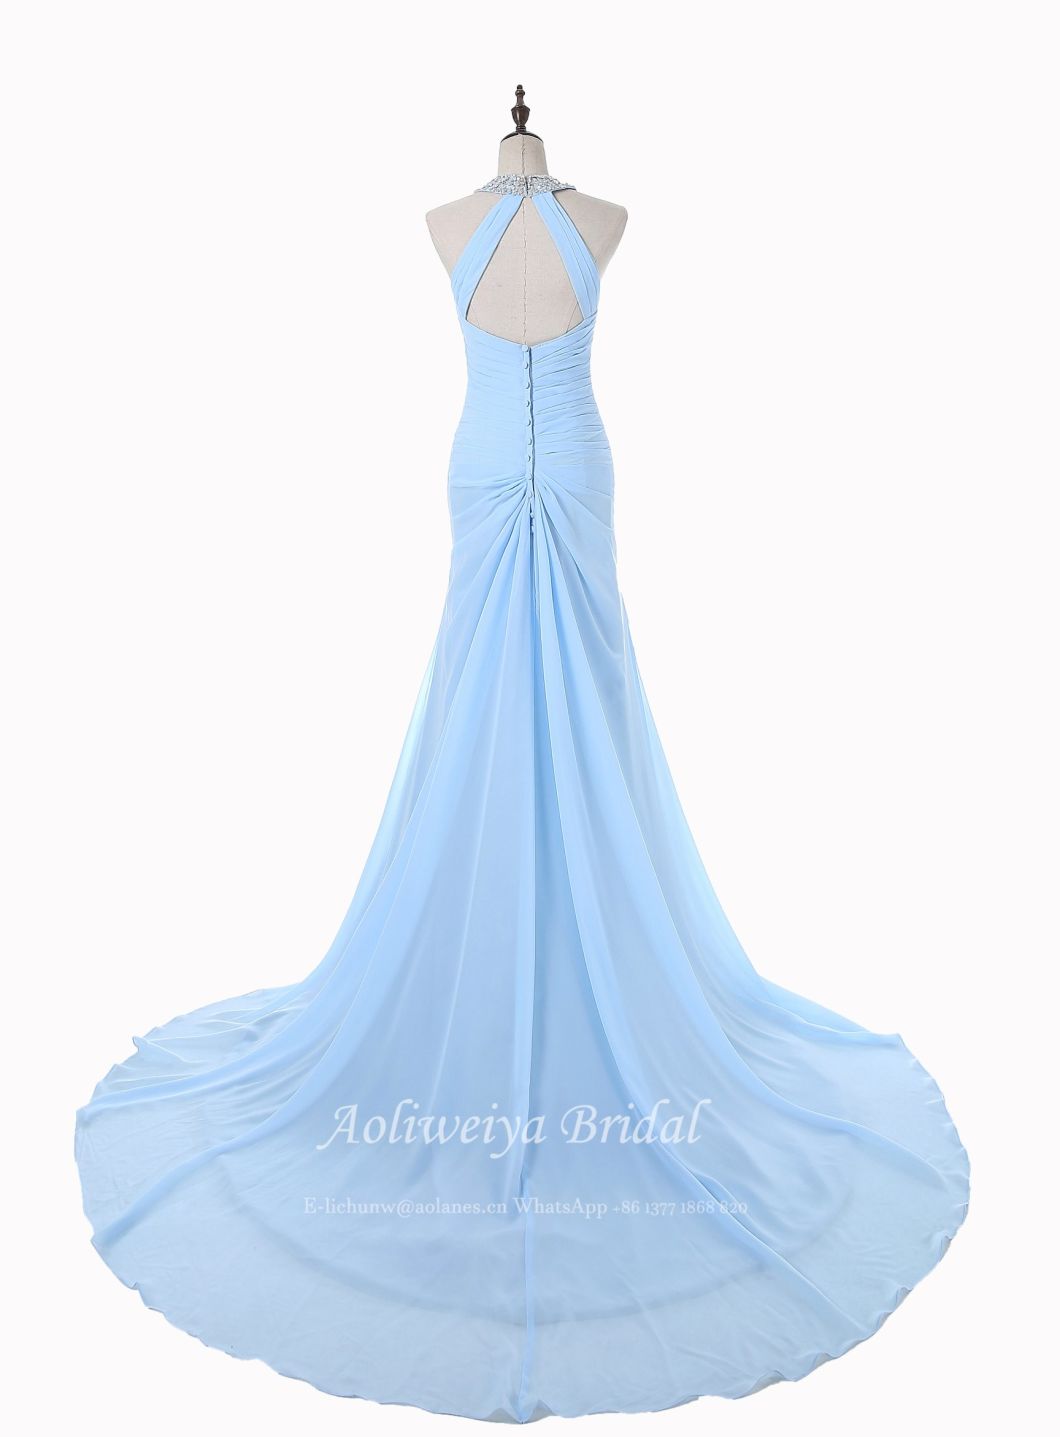 Aoliweiya Sky Blue Hatler Wedding Evening Party Dress